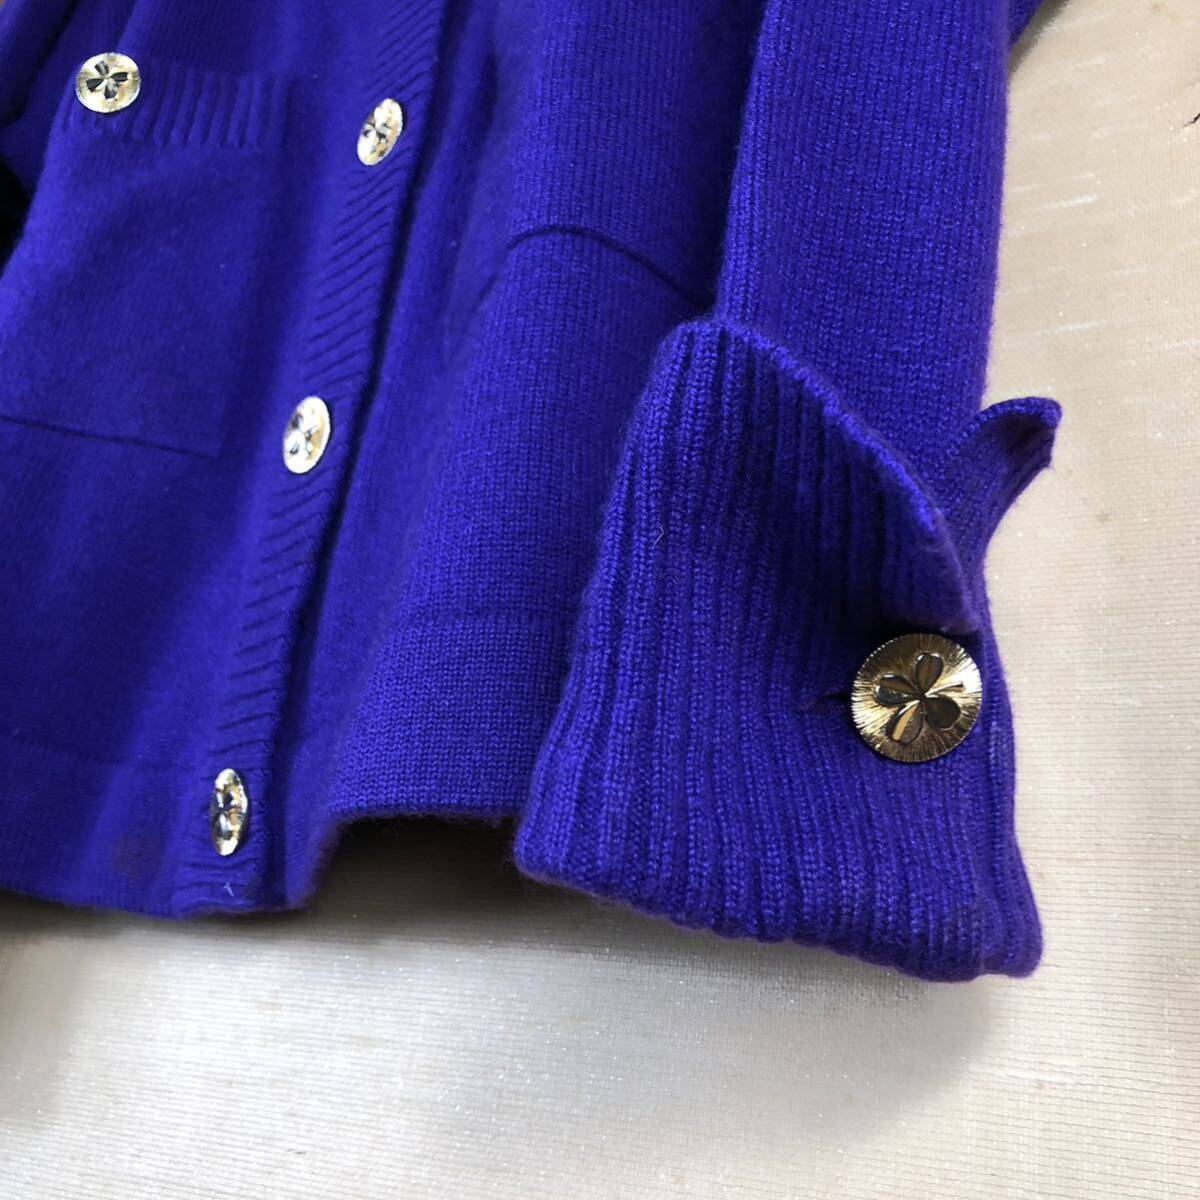  Chanel 80 годы после половина очень редкий clover кнопка фиолетовый цвет no color кардиган довольно большой размер CHANEL